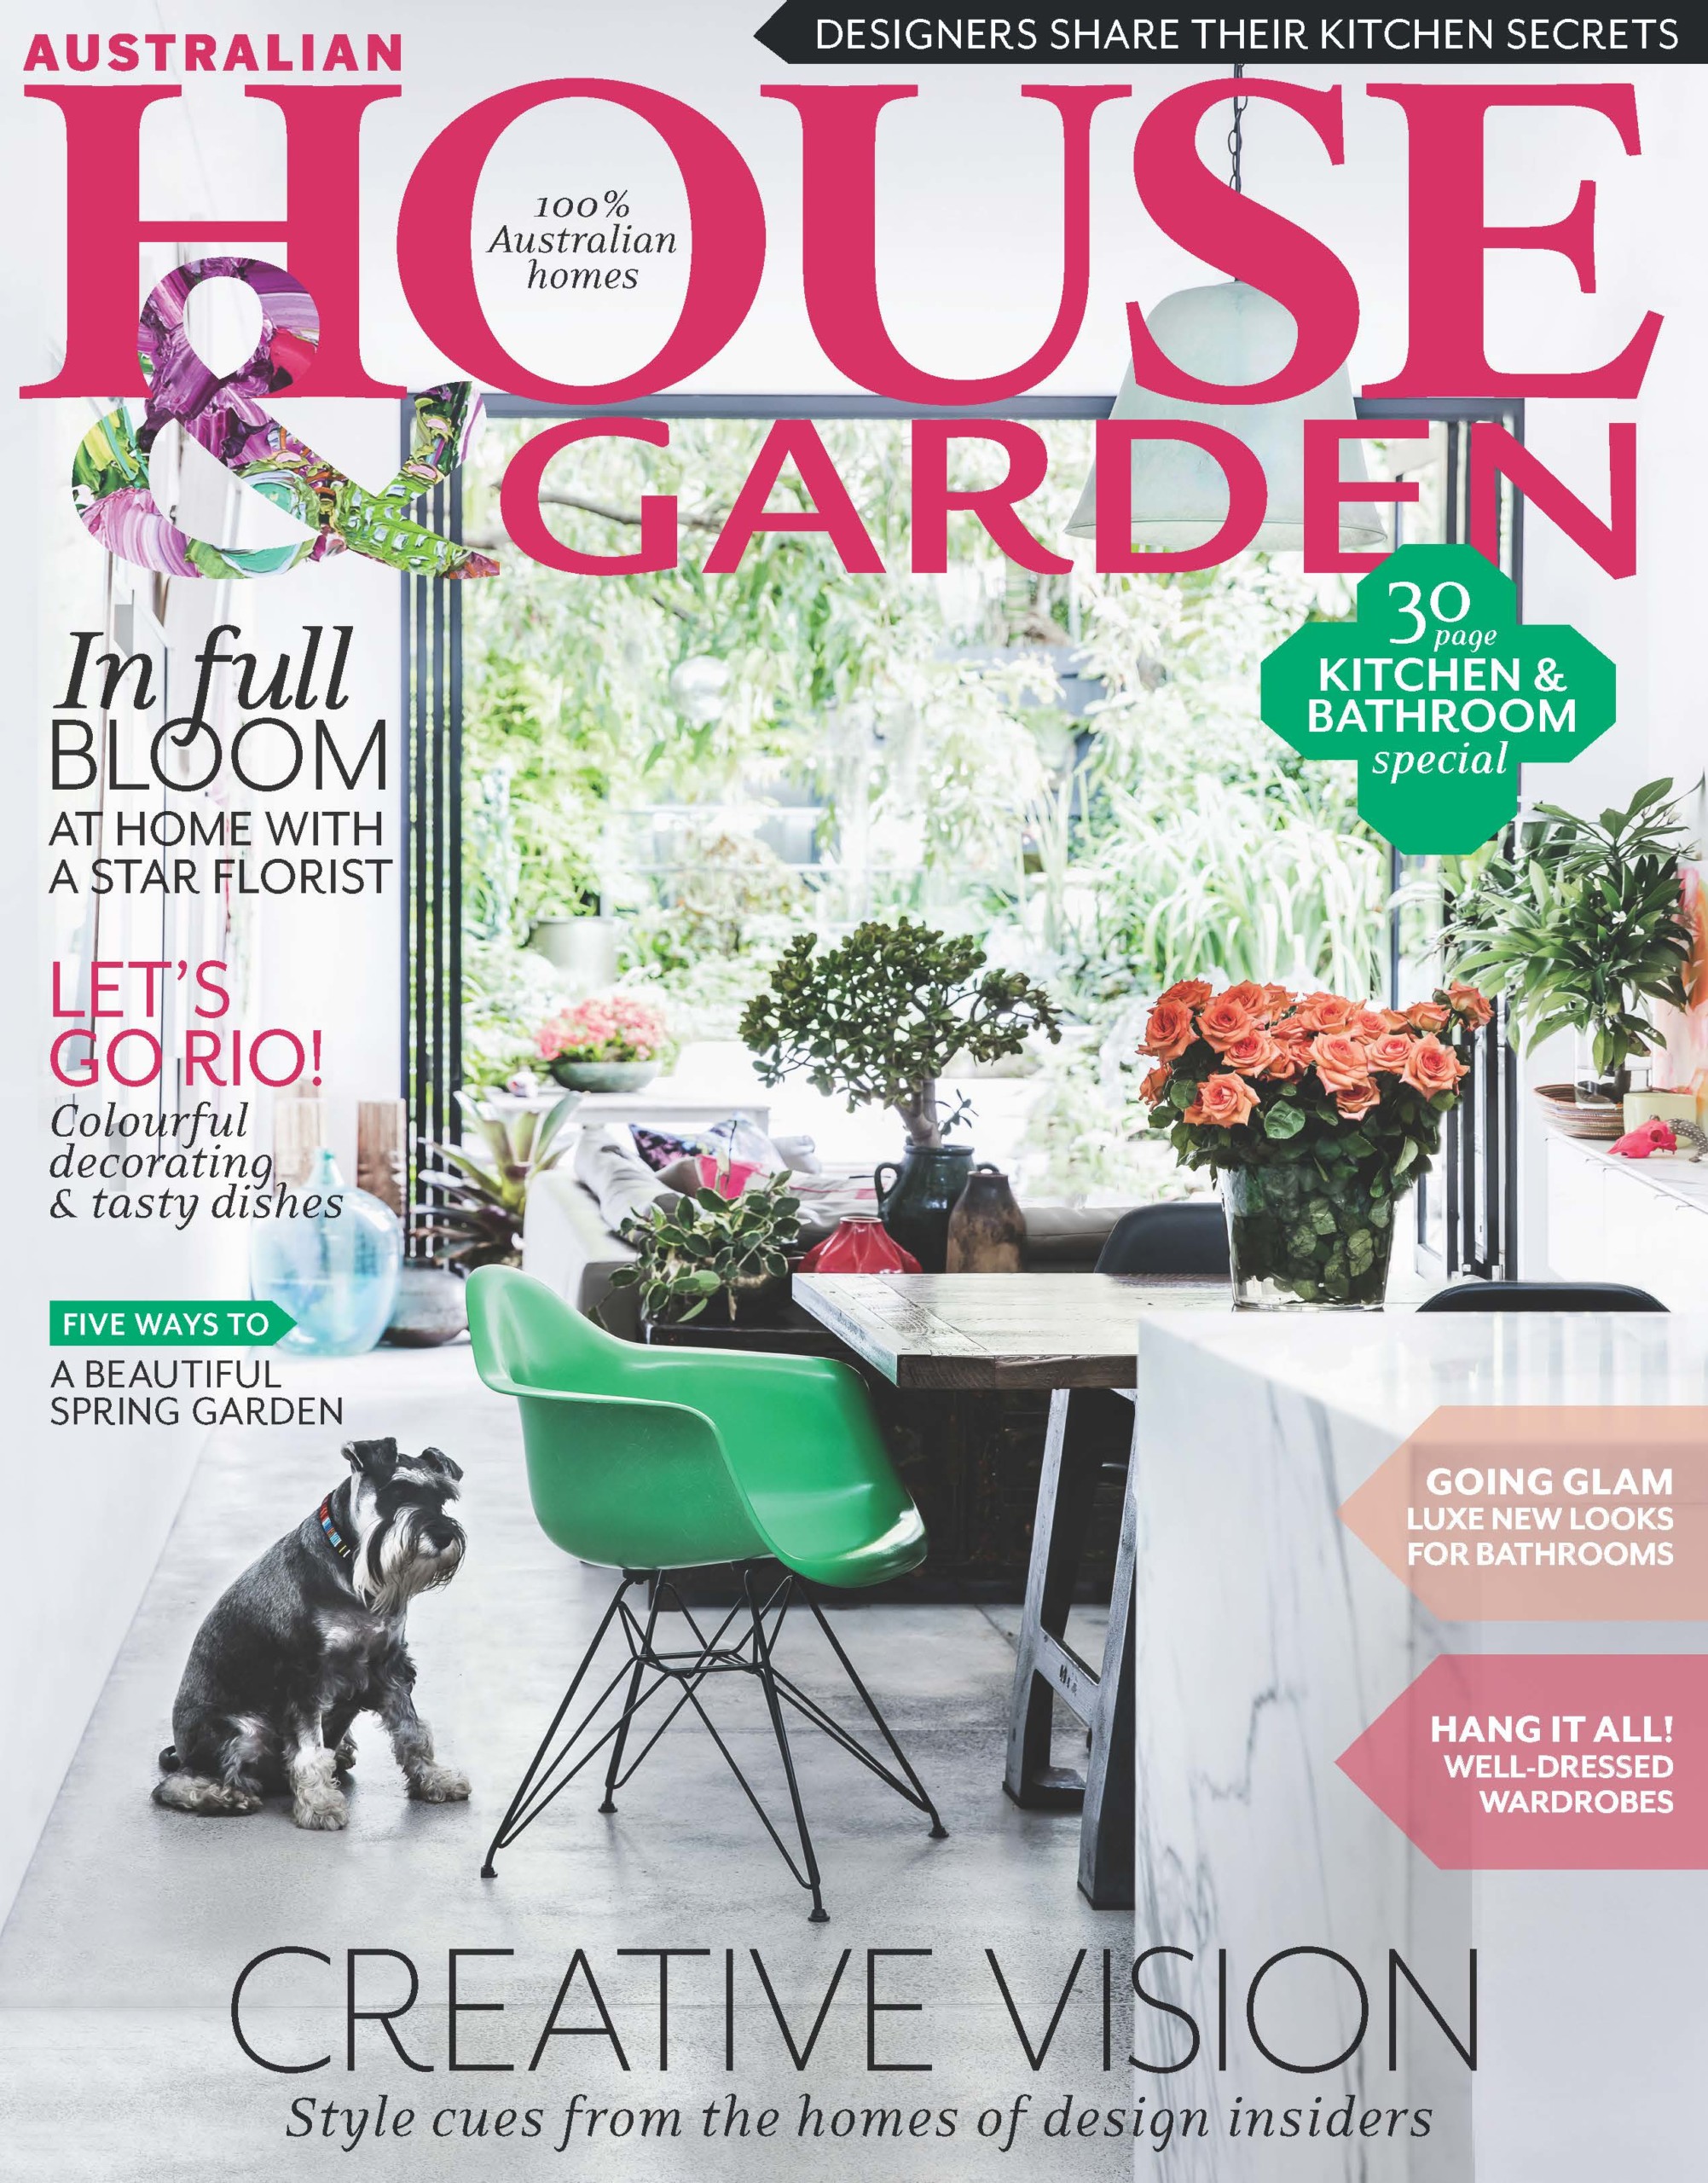 House & Garden Sept 2016 Cover